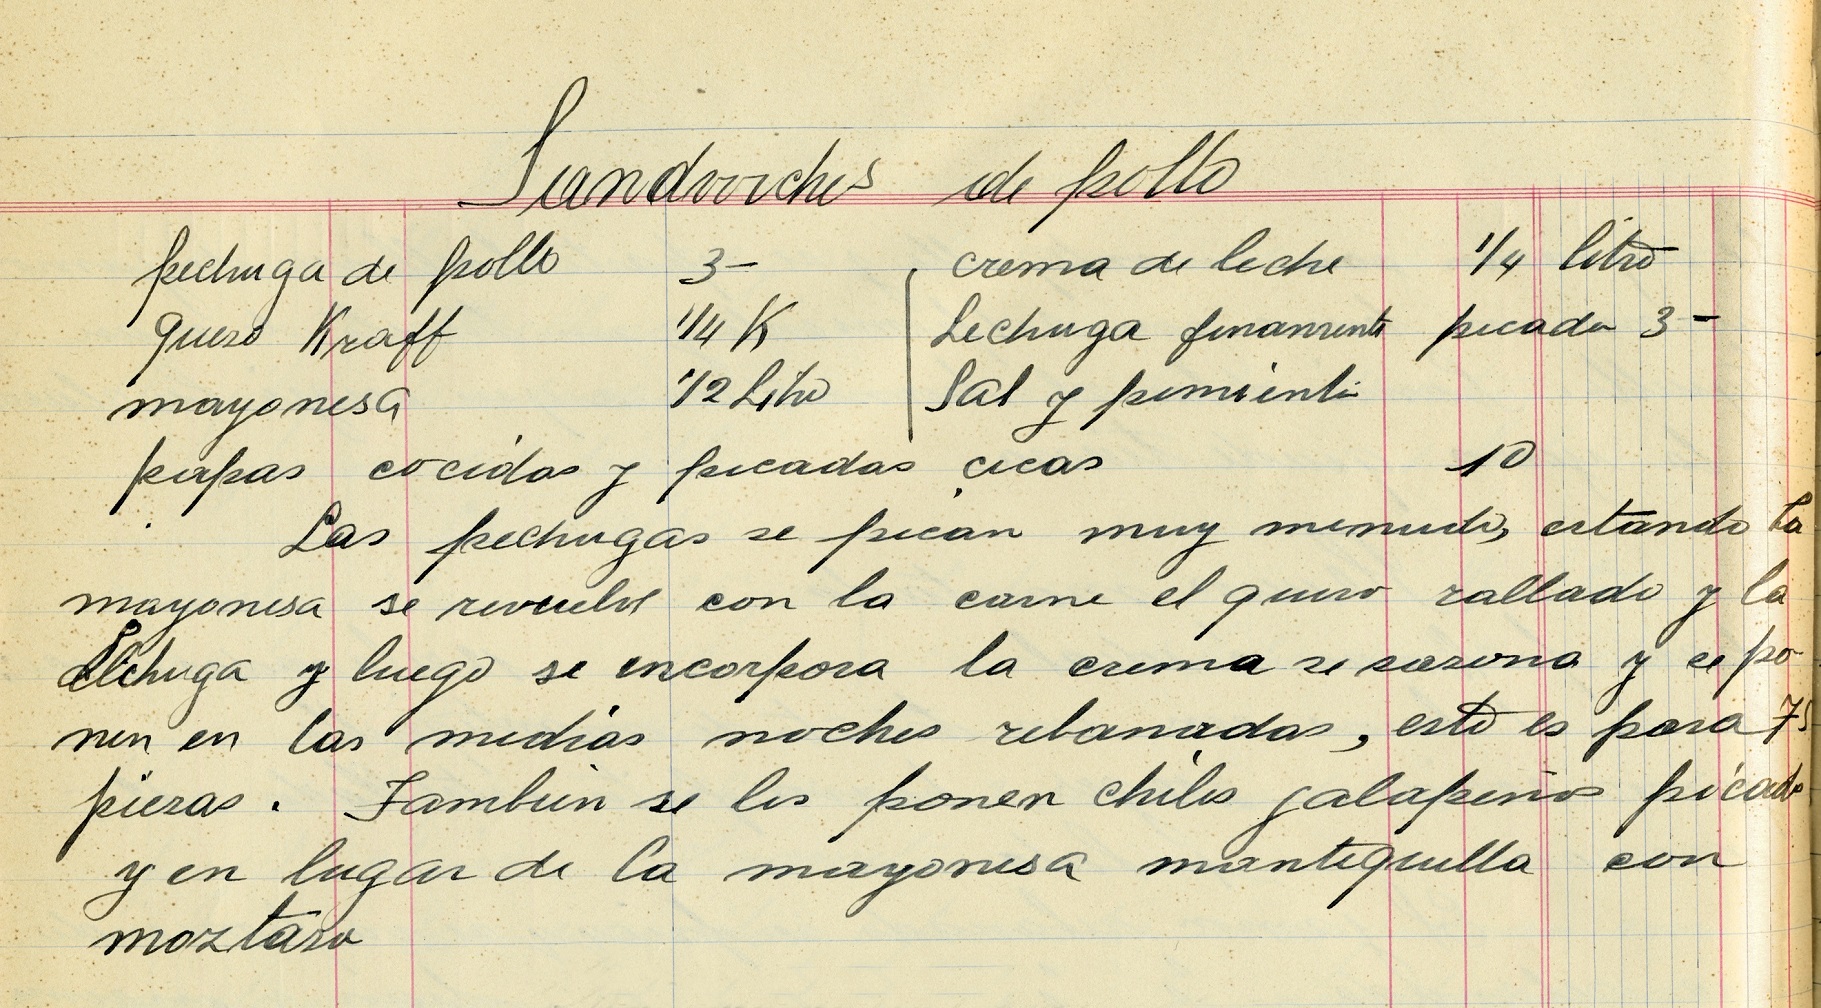 “Sandwchis de pollo”, Recetario manuscrito de Amparo Gómez, 1929. Centro de documentación Fototeca Lorenzo Becerril A.C.